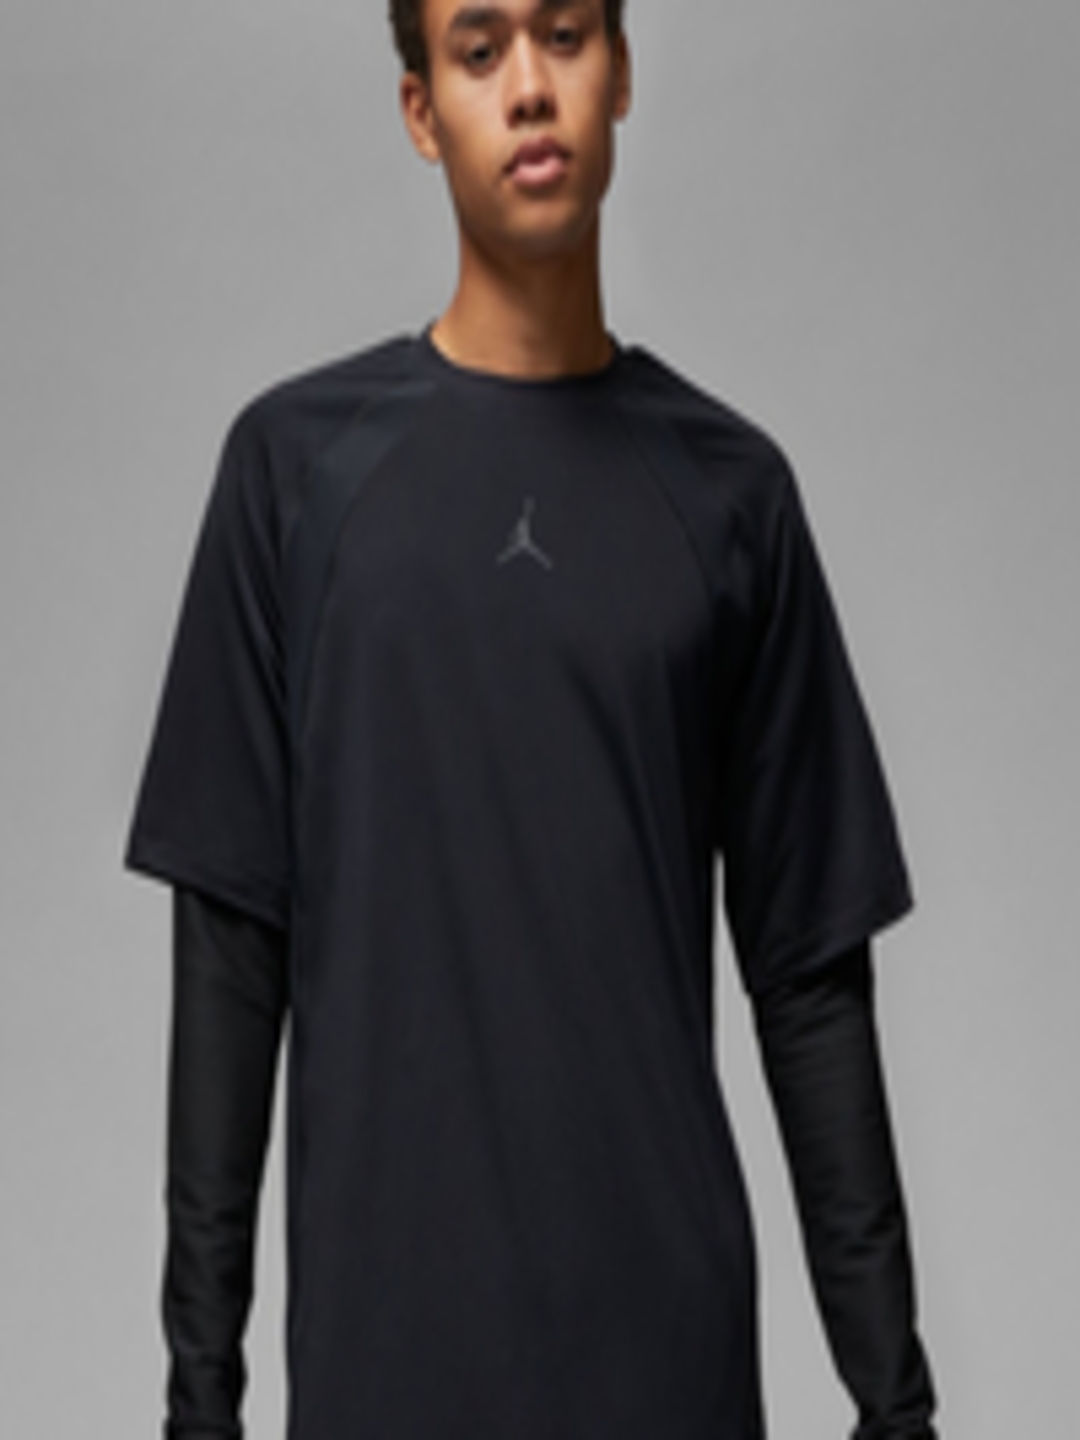 Buy Nike Dri Fit Long Sleeve Tshirts - Tshirts for Men 25202592 | Myntra